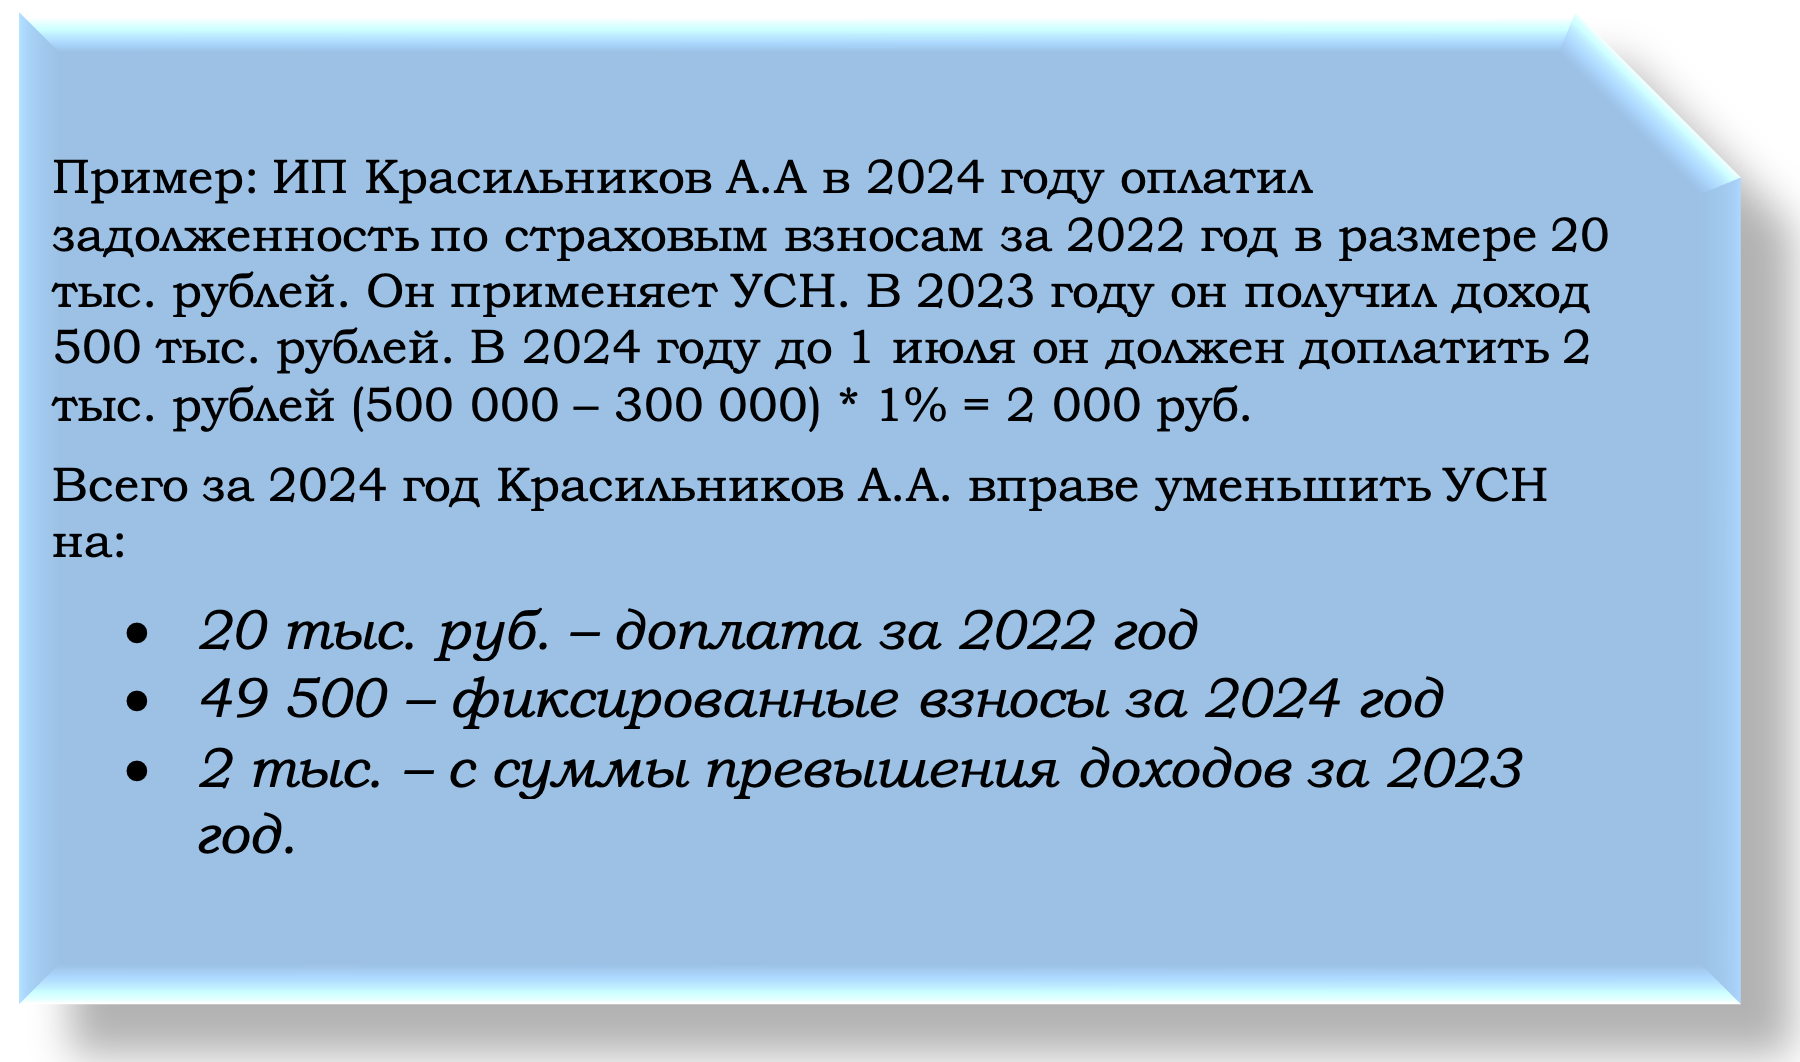 Новые правила уменьшения усн 2024